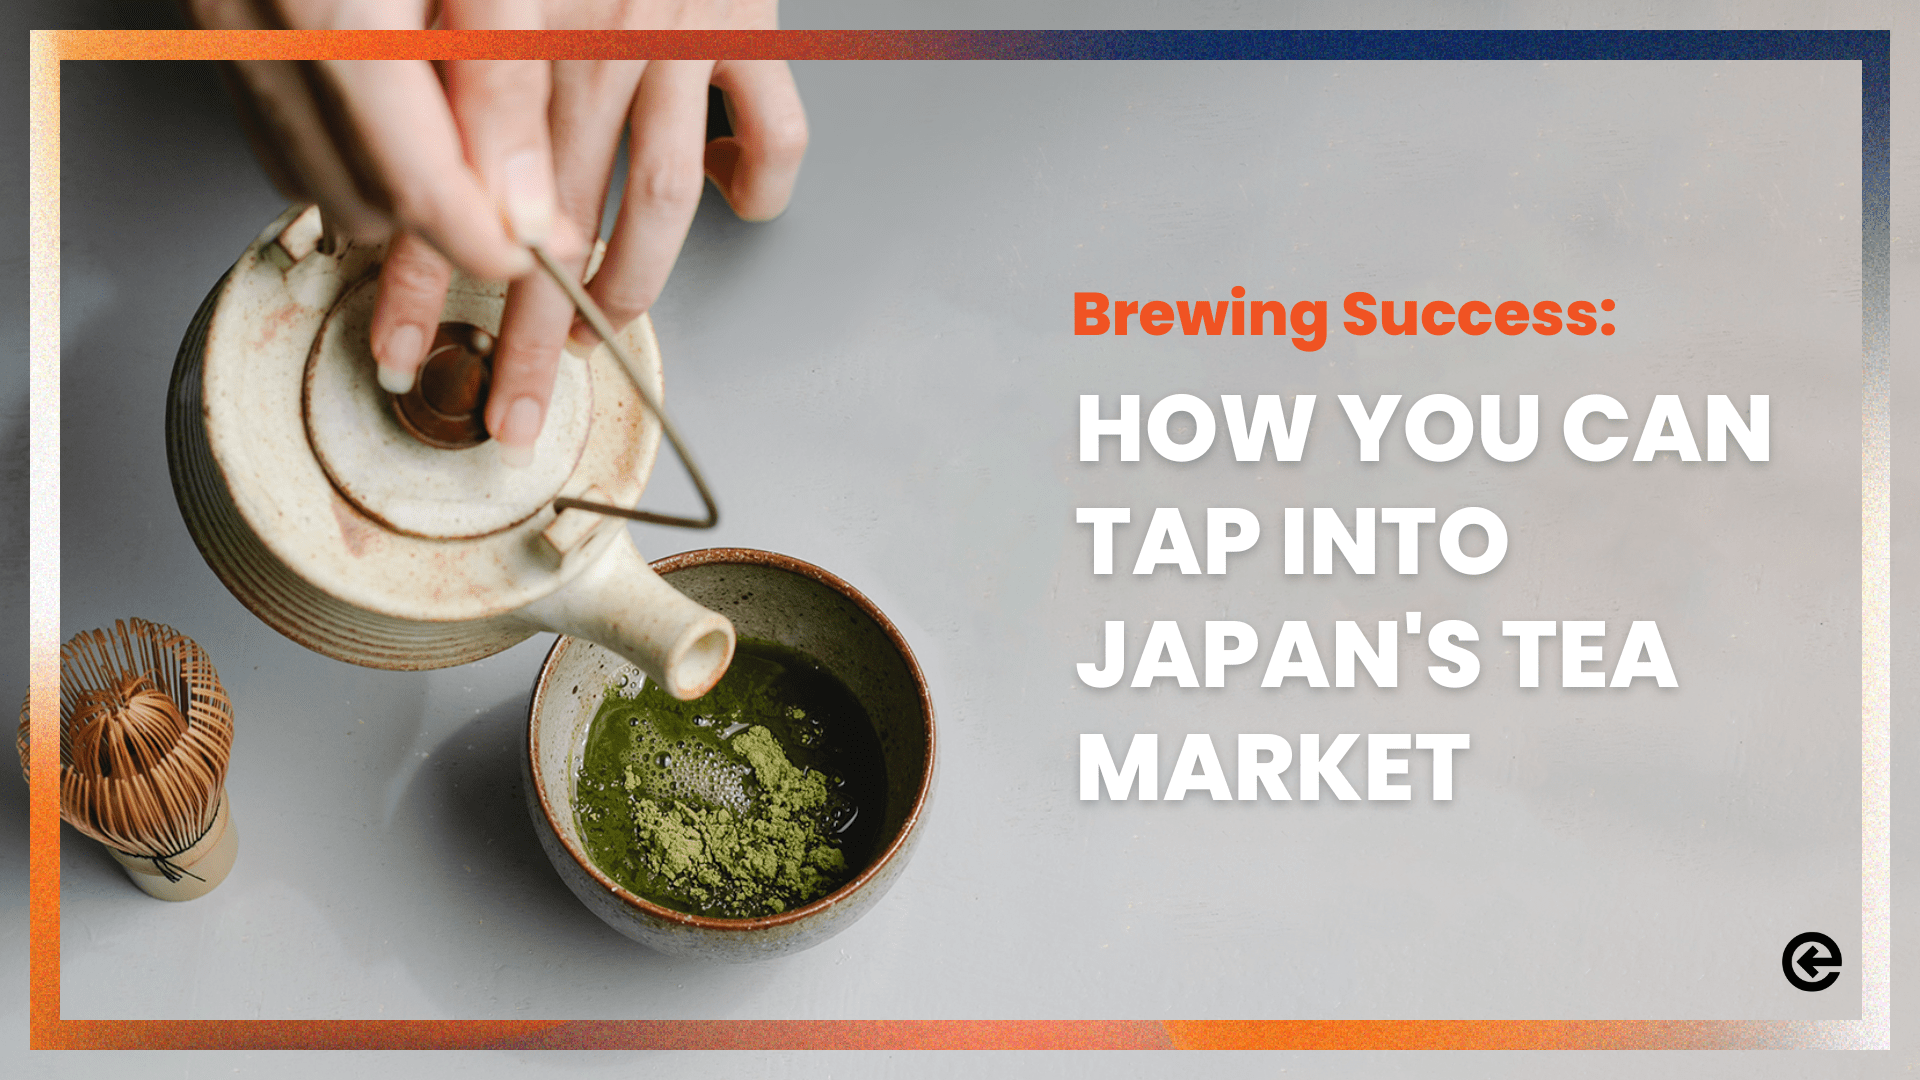 ब्रूइंग सफलता: आप जापान के चाय बाजार में कैसे टैप कर सकते हैं